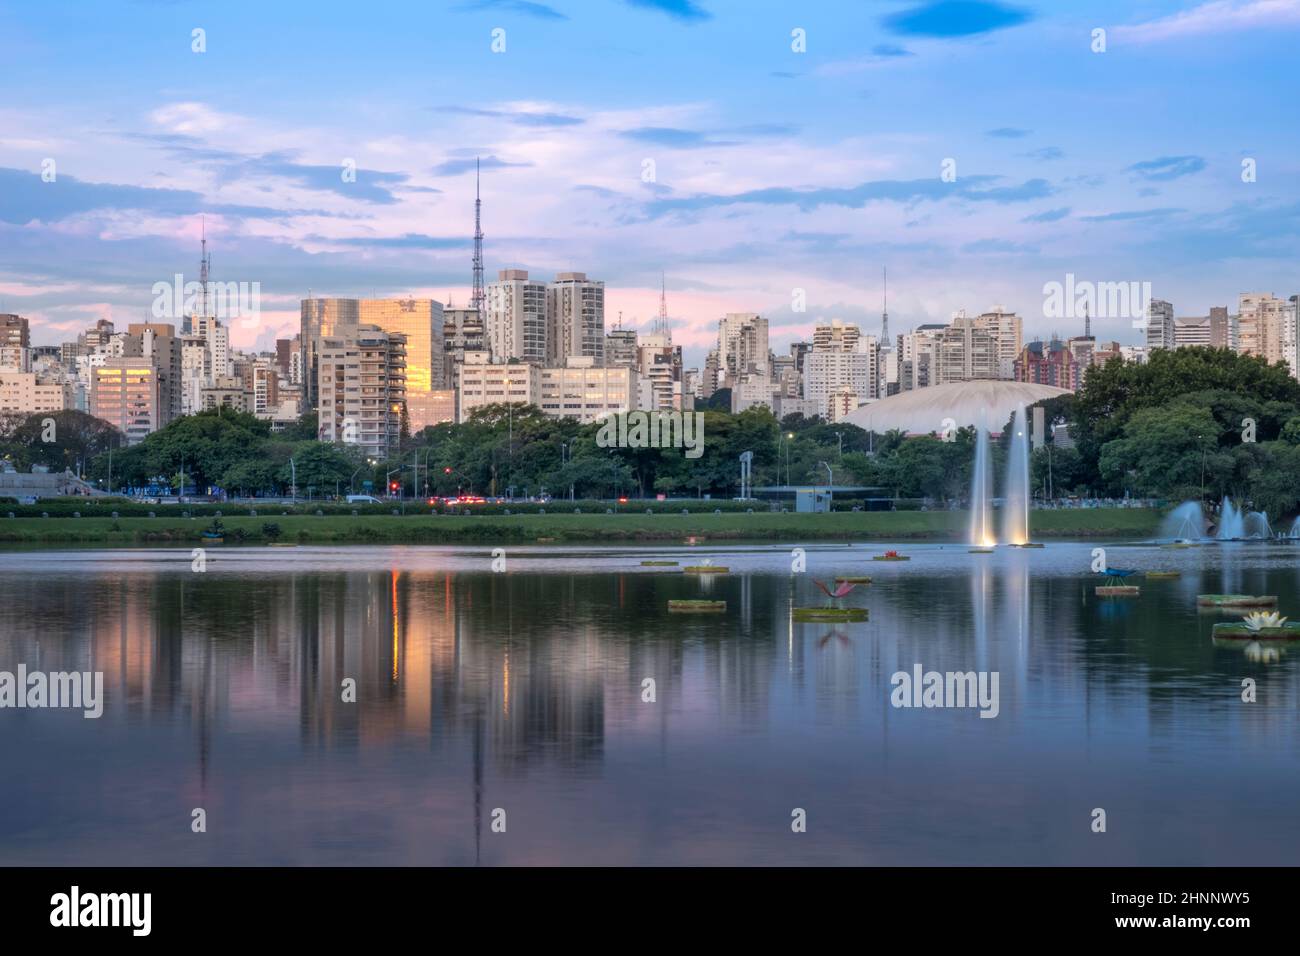 Brasil, Sao Paulo, la ciudad de Sao Paulo, el lago en el Parque Ibirapuera en el distrito del centro de la ciudad Foto de stock